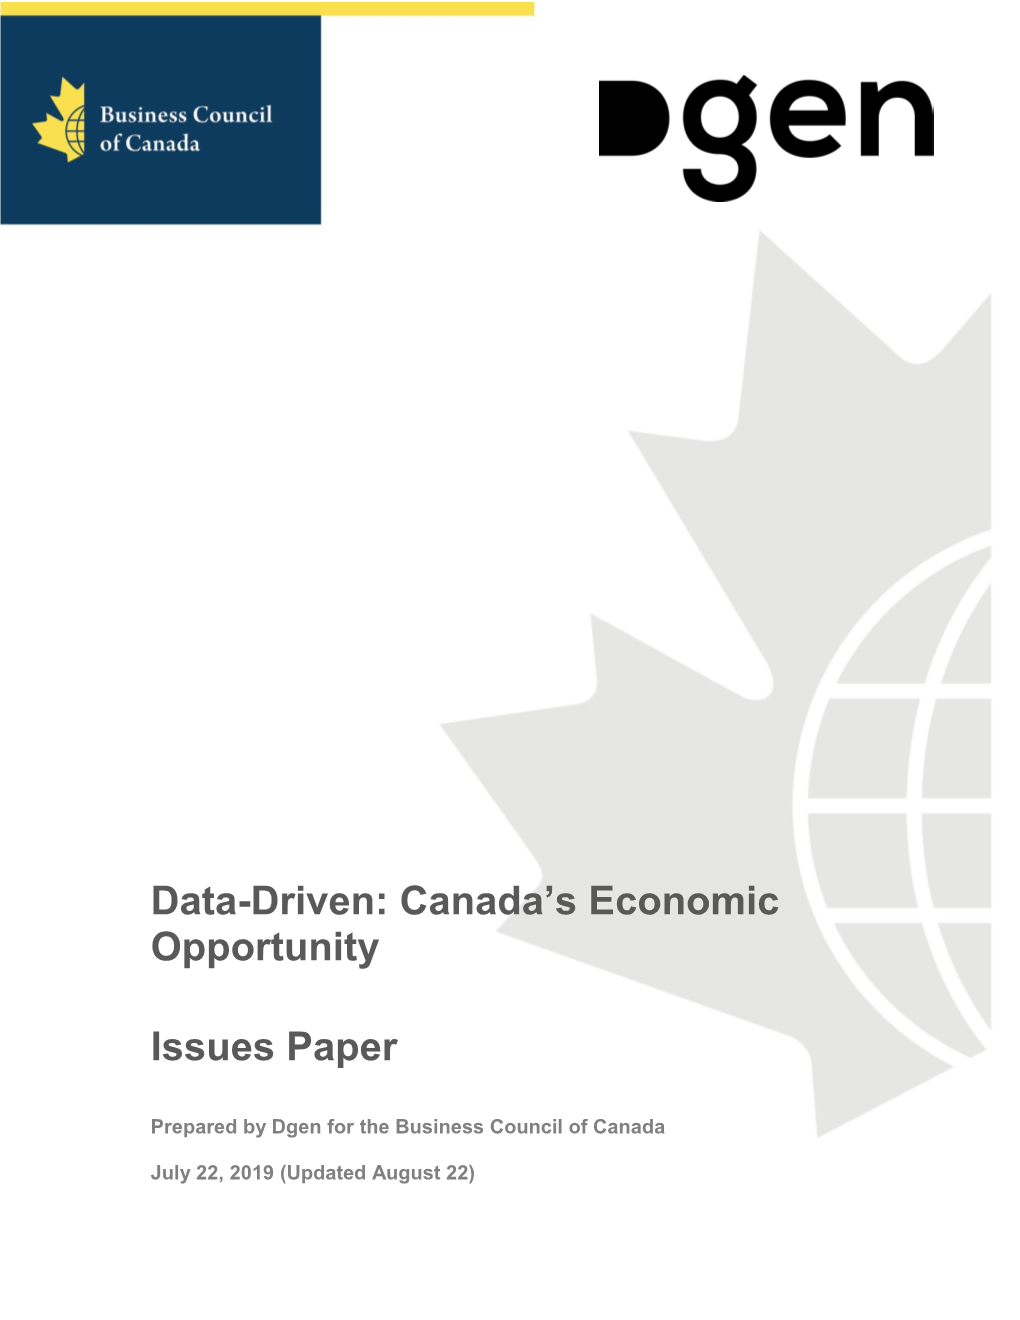 Data-Driven: Canada’S Economic Opportunity